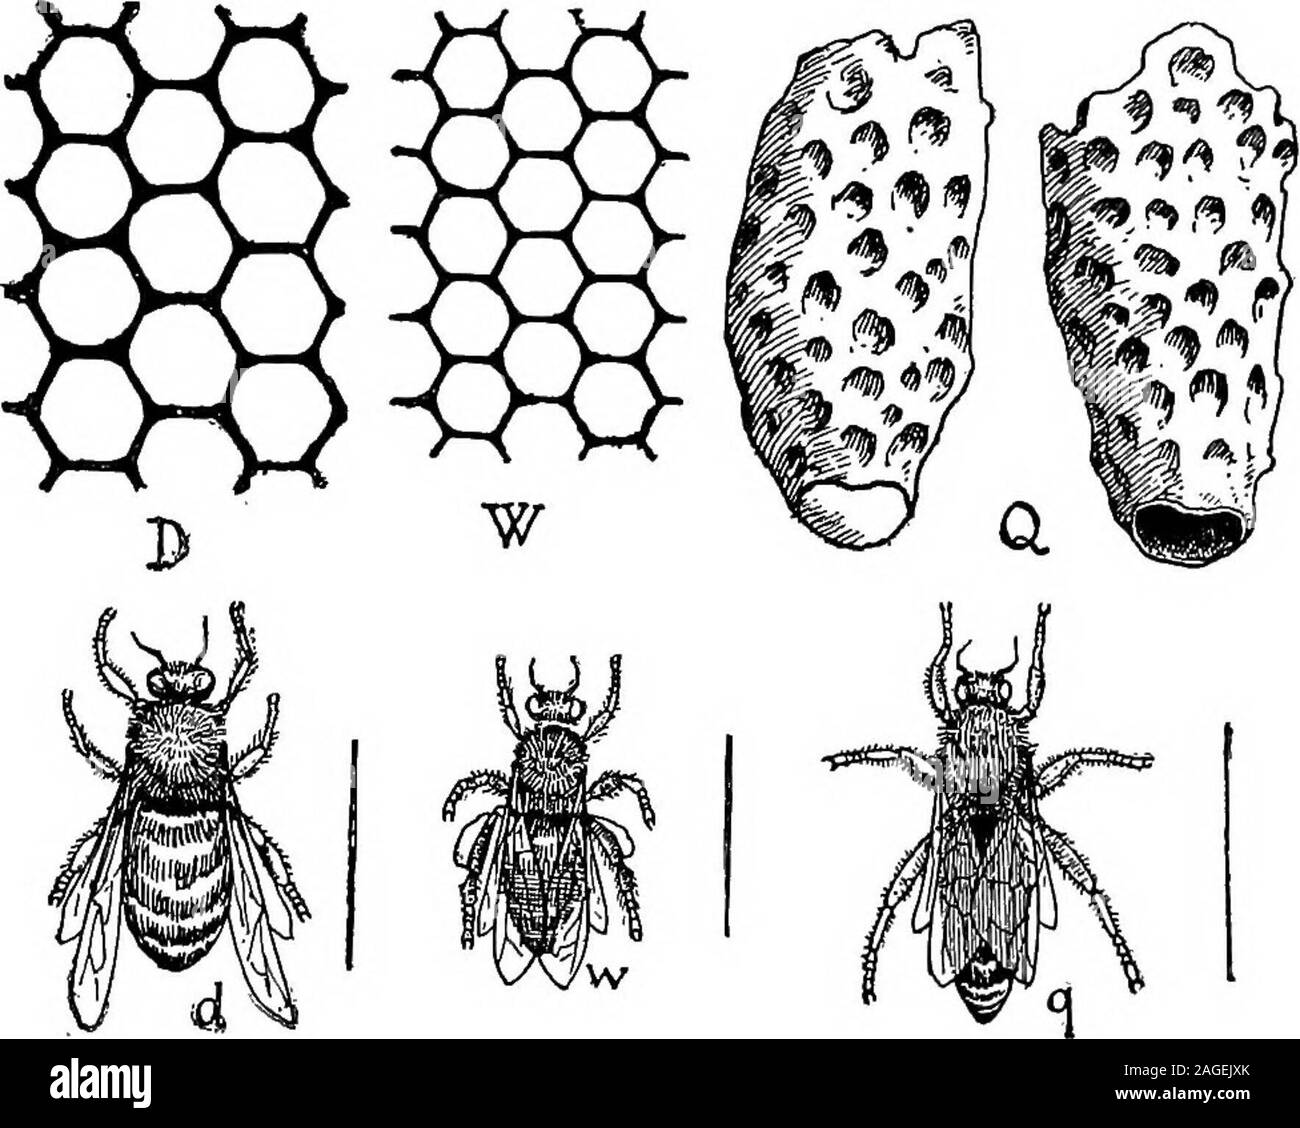 . Grundzüge der Zoologie. ddition zu diesem Paar von Drüsen, es gibt in der Arbeitnehmer threeother Drüse Systeme. Dieser, der zweite und dritte Paare gemeinsame zentrale Steckdose thementum einen, und der Speichel, der reichlich gemischt mit Nektar während des Ansaugens absondern. Thefourth Paar ist klein, und theducts Öffnen nur innerhalb der mand - ible. Die letzten drei Paare ofglands sind auch in droneand Queen gefunden. Die Methode der Zuführung der Biene unterscheidet sich deutlich in den drei Arten. In der Arbeiter, der Honig Angesaugt von Blumen ist mit Speichel vermischt, übergibt die Speiseröhre hinunter in das Erntegut, von dort durch die Öffnung Stockfoto